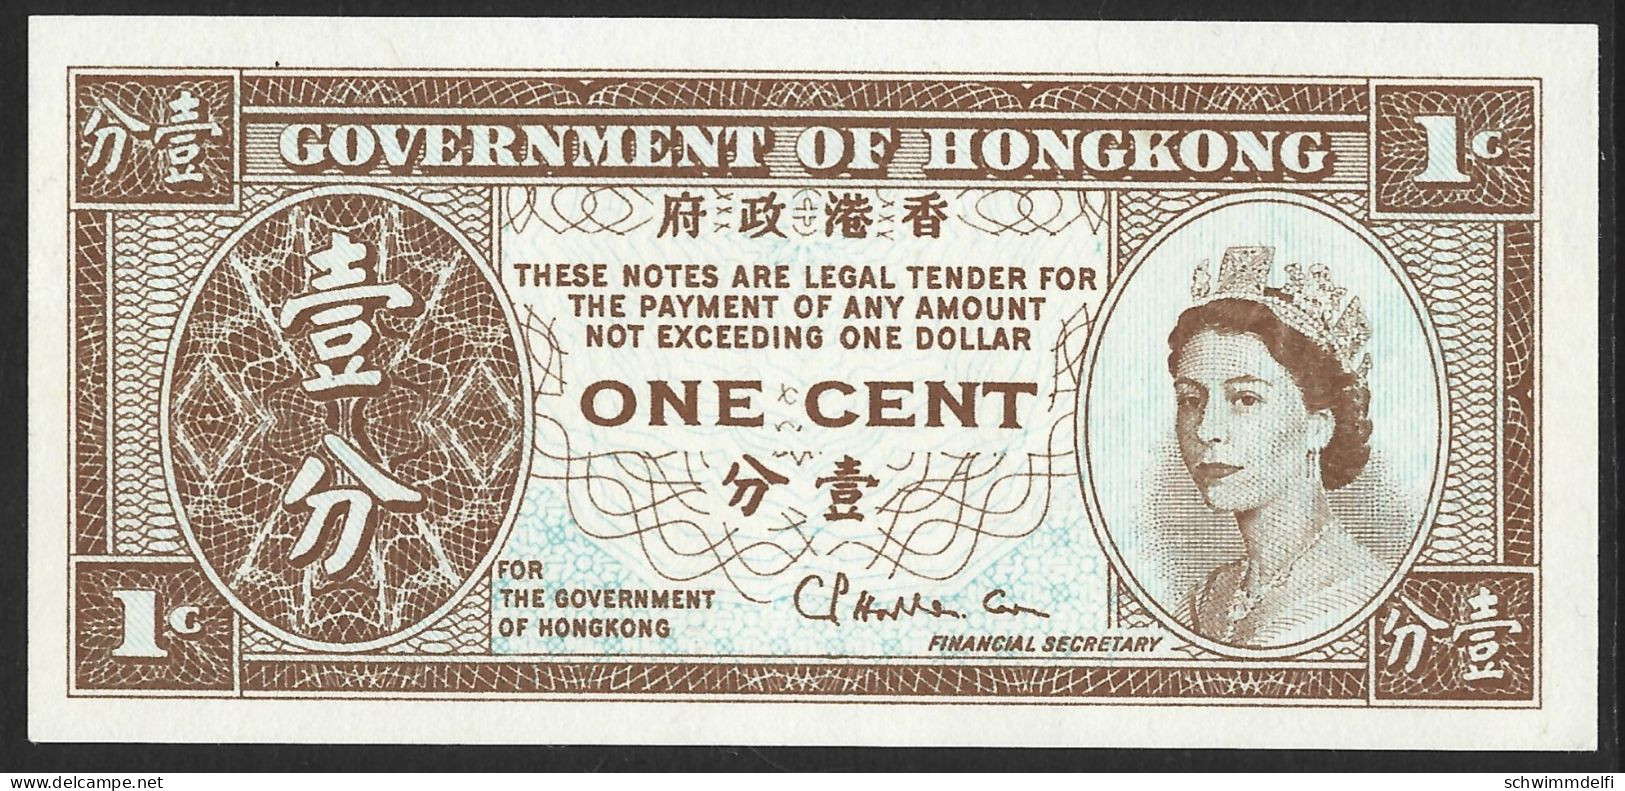 HONGKONG - HONG KONG - 1 CENT 1961 - 71 - PICK: 325 - PAPEL - IMPRIMIR DE UN LADO - SIN CIRCULAR - UNZIRKULIERT - Hongkong